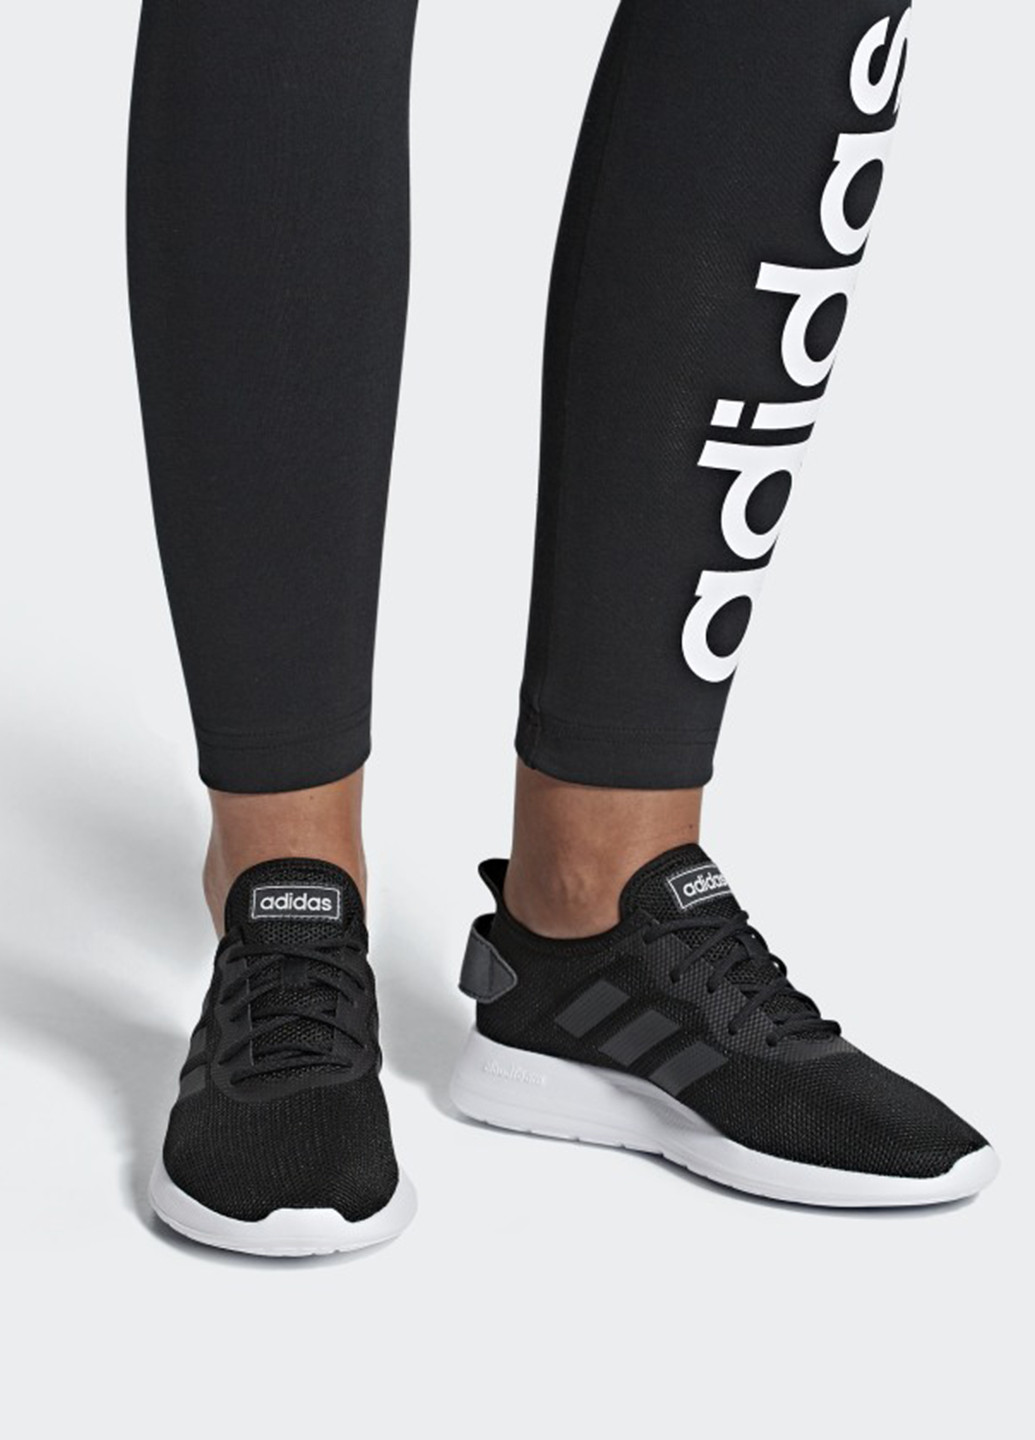 Черные демисезонные кроссовки adidas Yatra